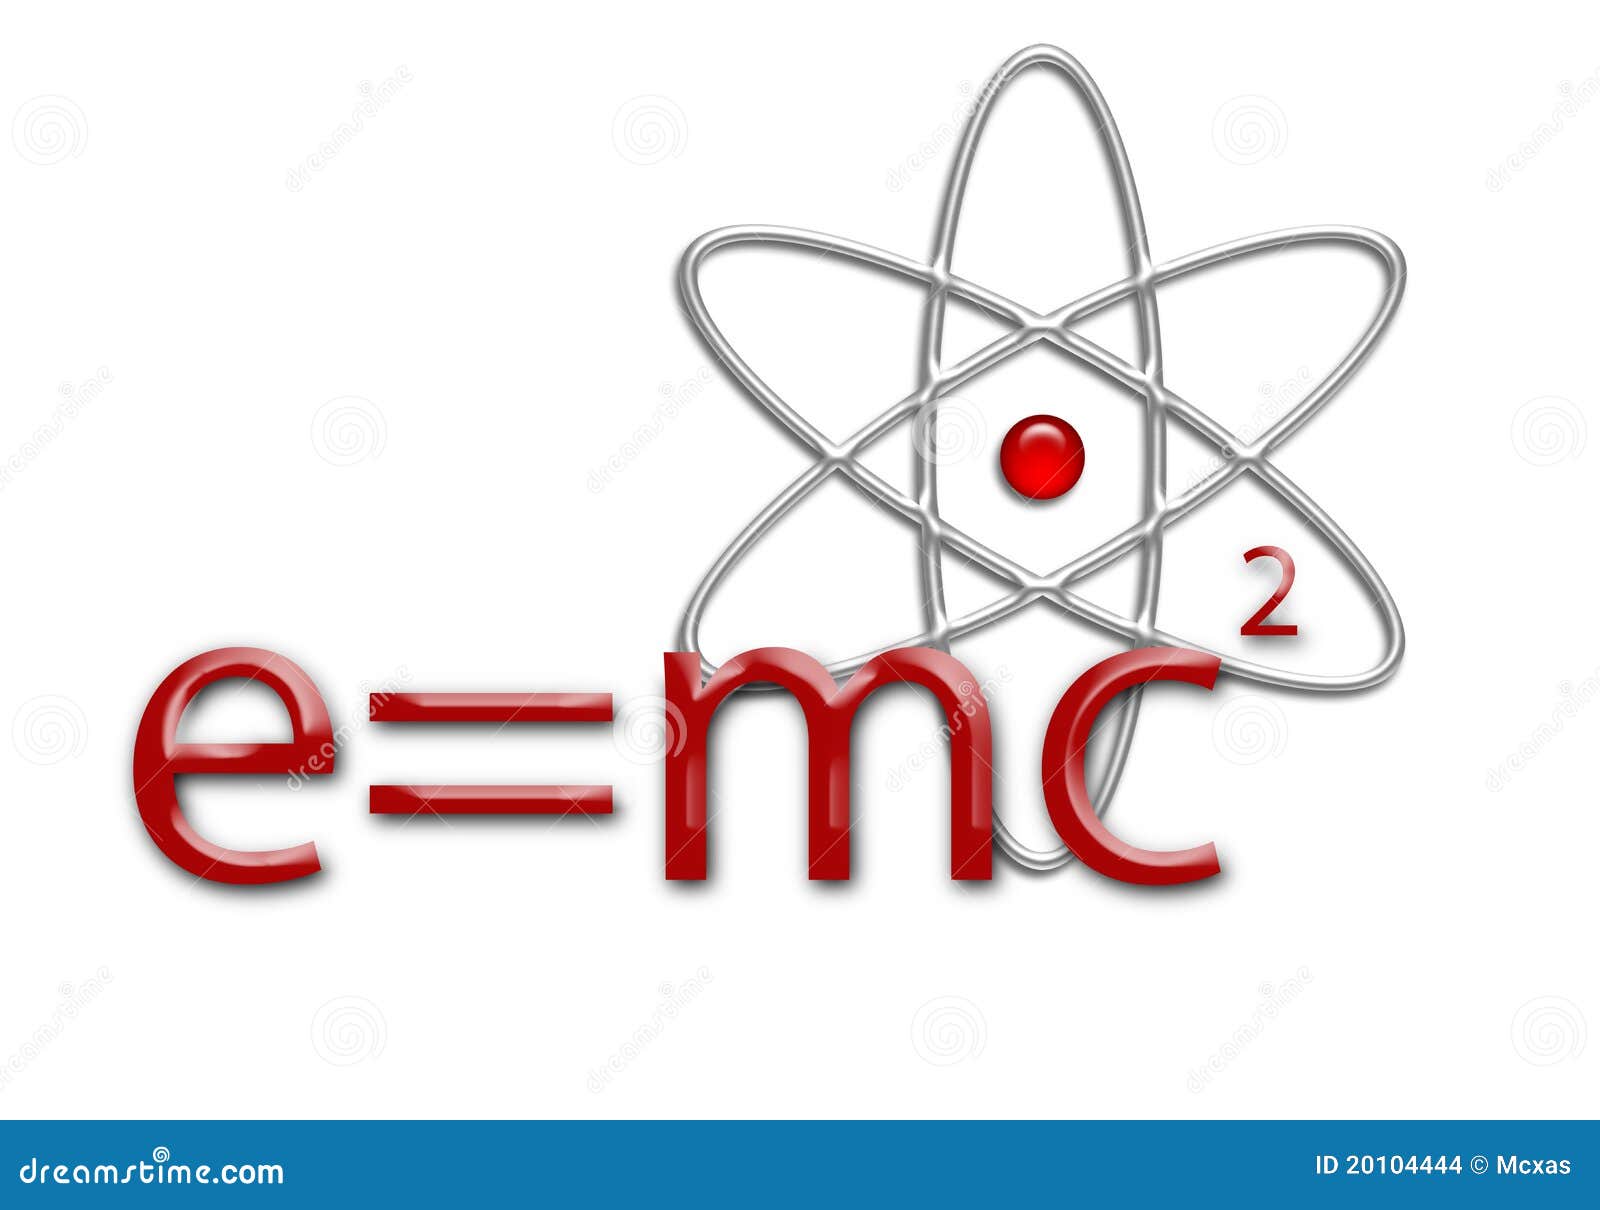 e mc2 equation atom 20104444